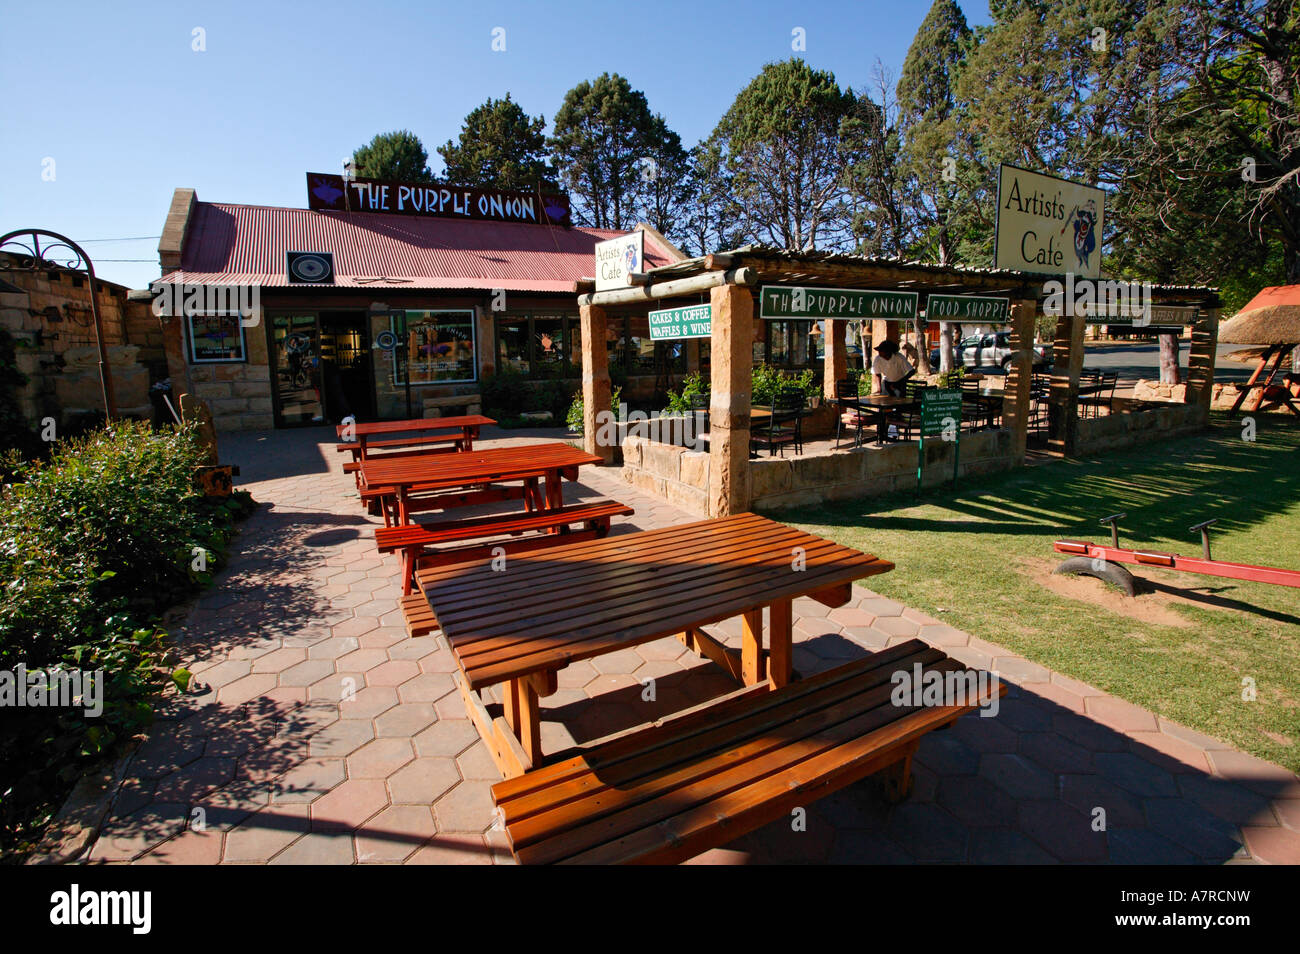 Das Purple Onion und Künstler-Café-Restaurant im Zentrum von Clarens Ort Clarens Provinz Free State in Südafrika Stockfoto